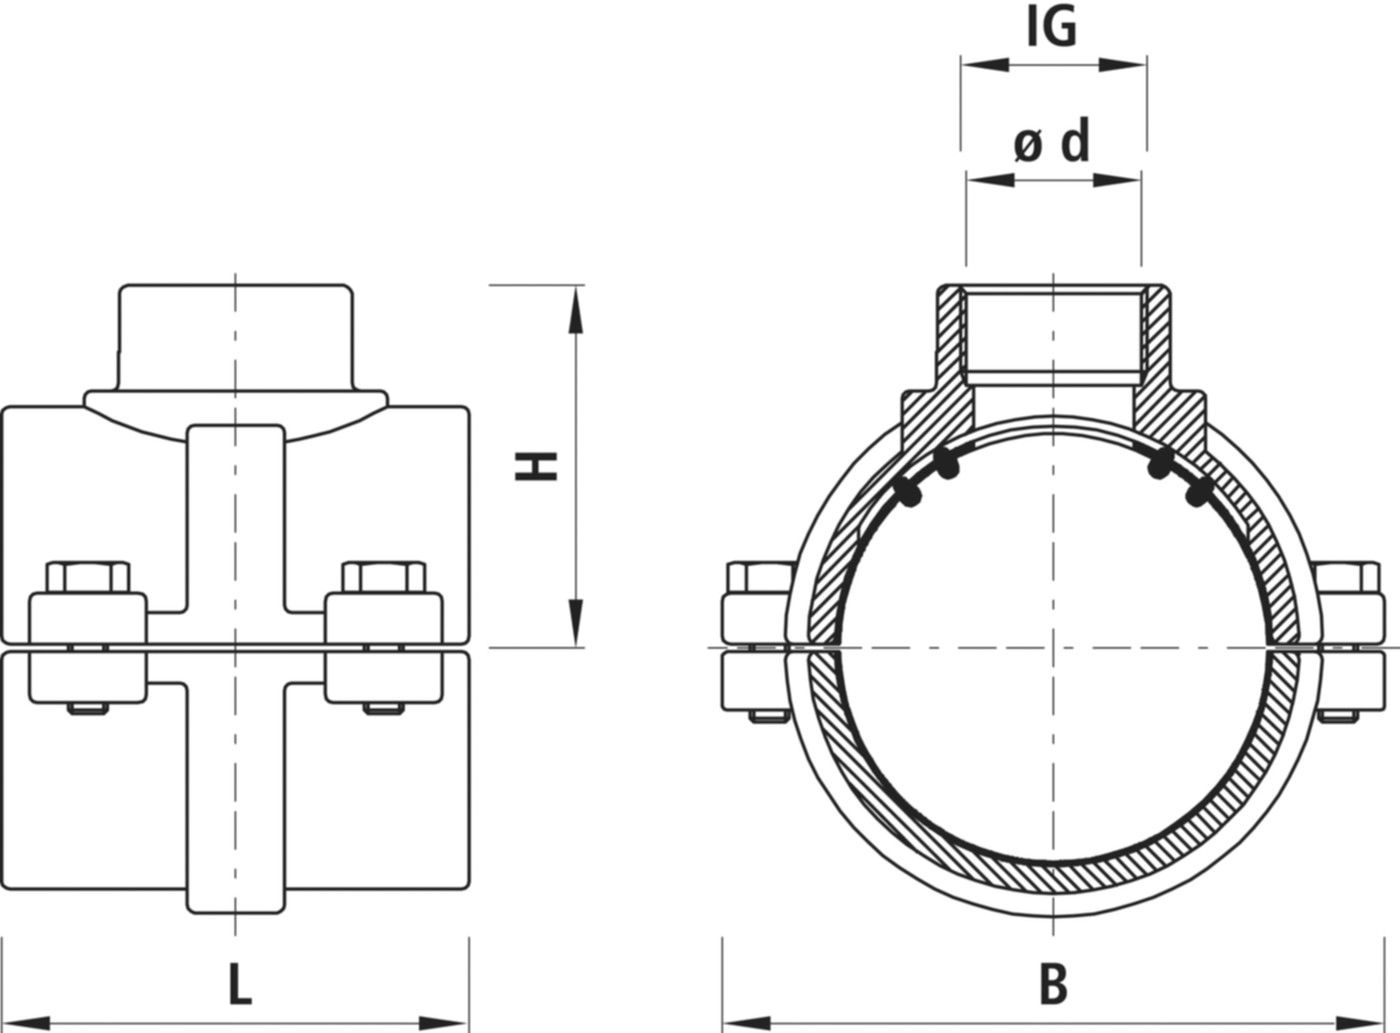 Haku-Anbohrschelle mit IG für Gas 5255 d 90mm - 1 1/2" - Hawle Hausanschluss- und Anbohrarmaturen